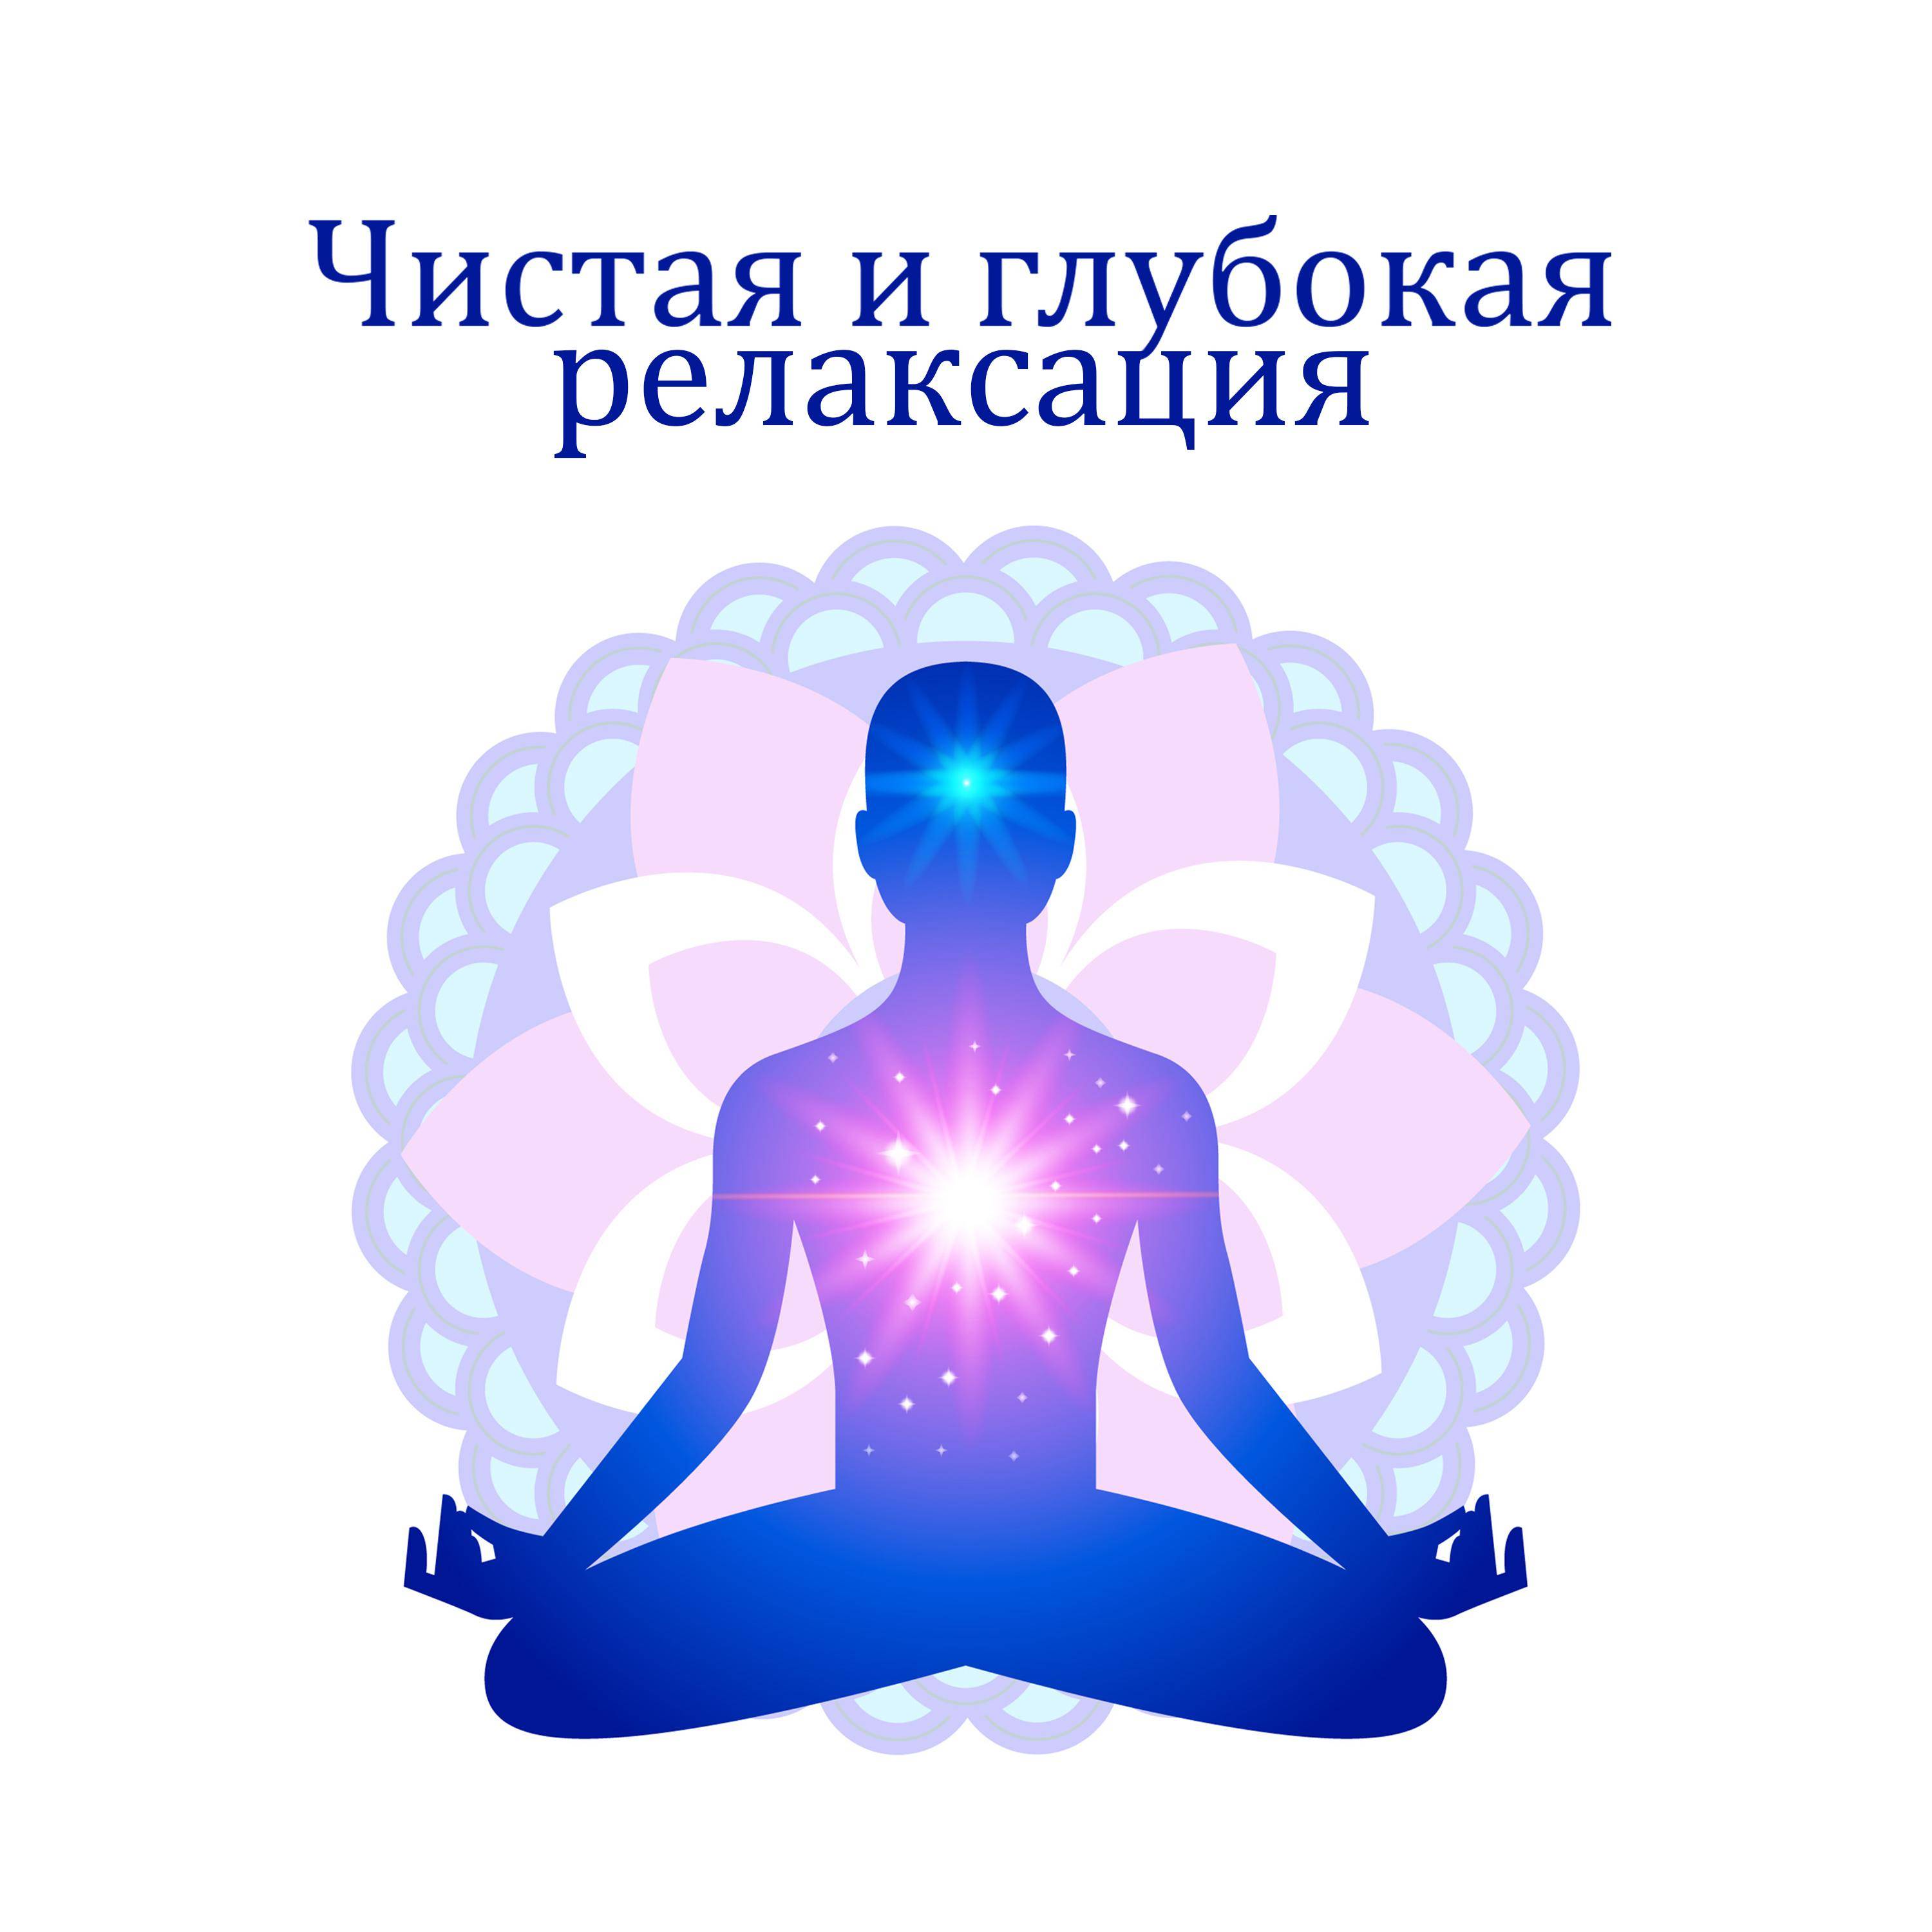 Медитация перед сном - улучшаем качество сна и успокаиваем ум - школа астрологии lakshmi